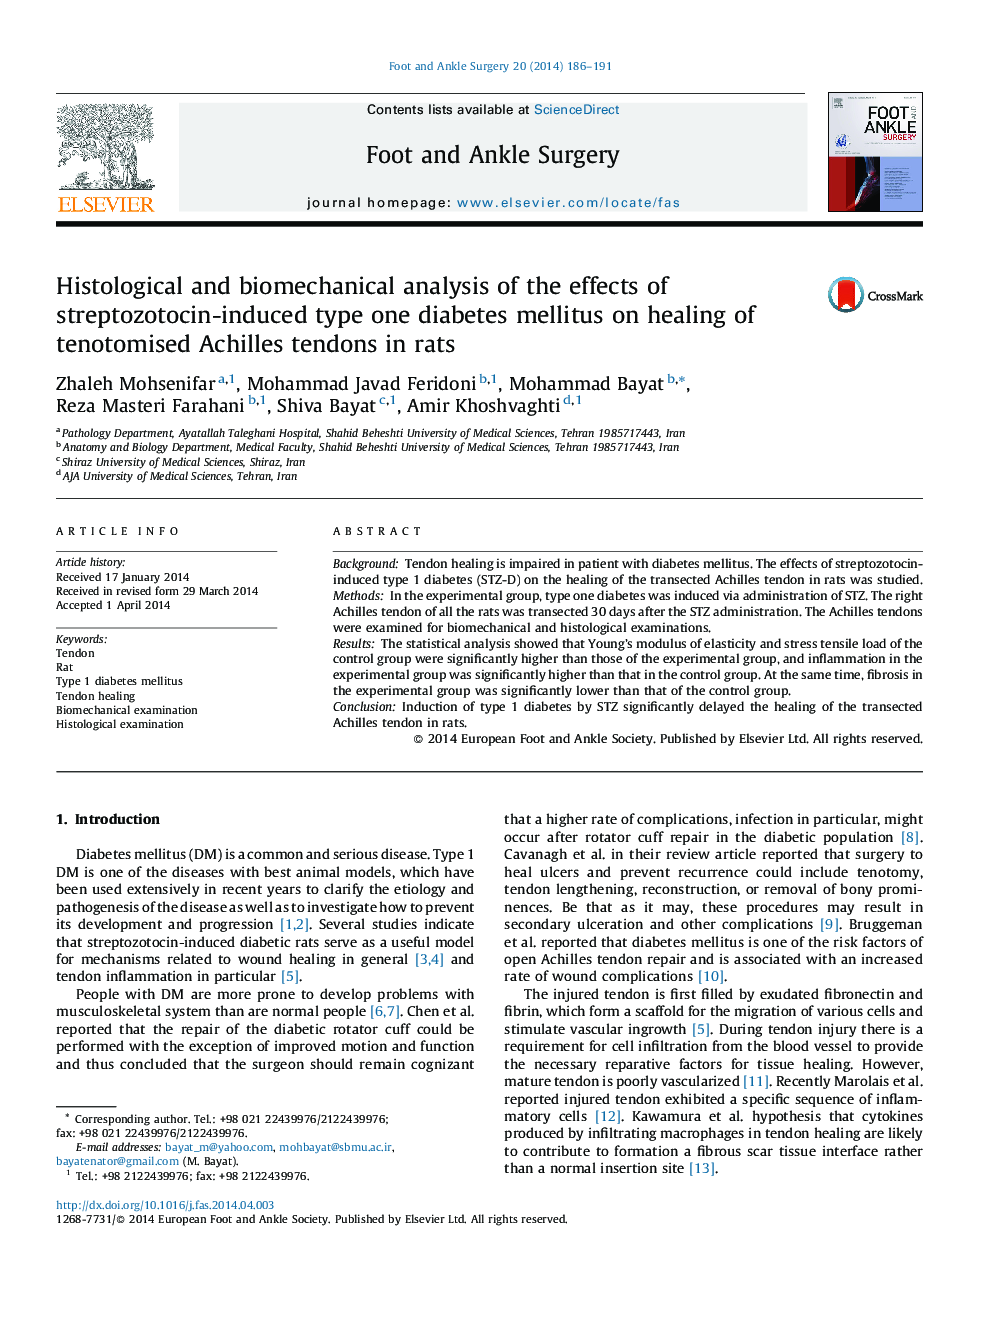 تجزیه و تحلیل هیستولوژیک و بیومکانیکی اثرات دیابت نوع یک ناشی از استرپتوزوتوسین بر بهبودی تاندون های تیشرت آهکی در موش صحرایی 